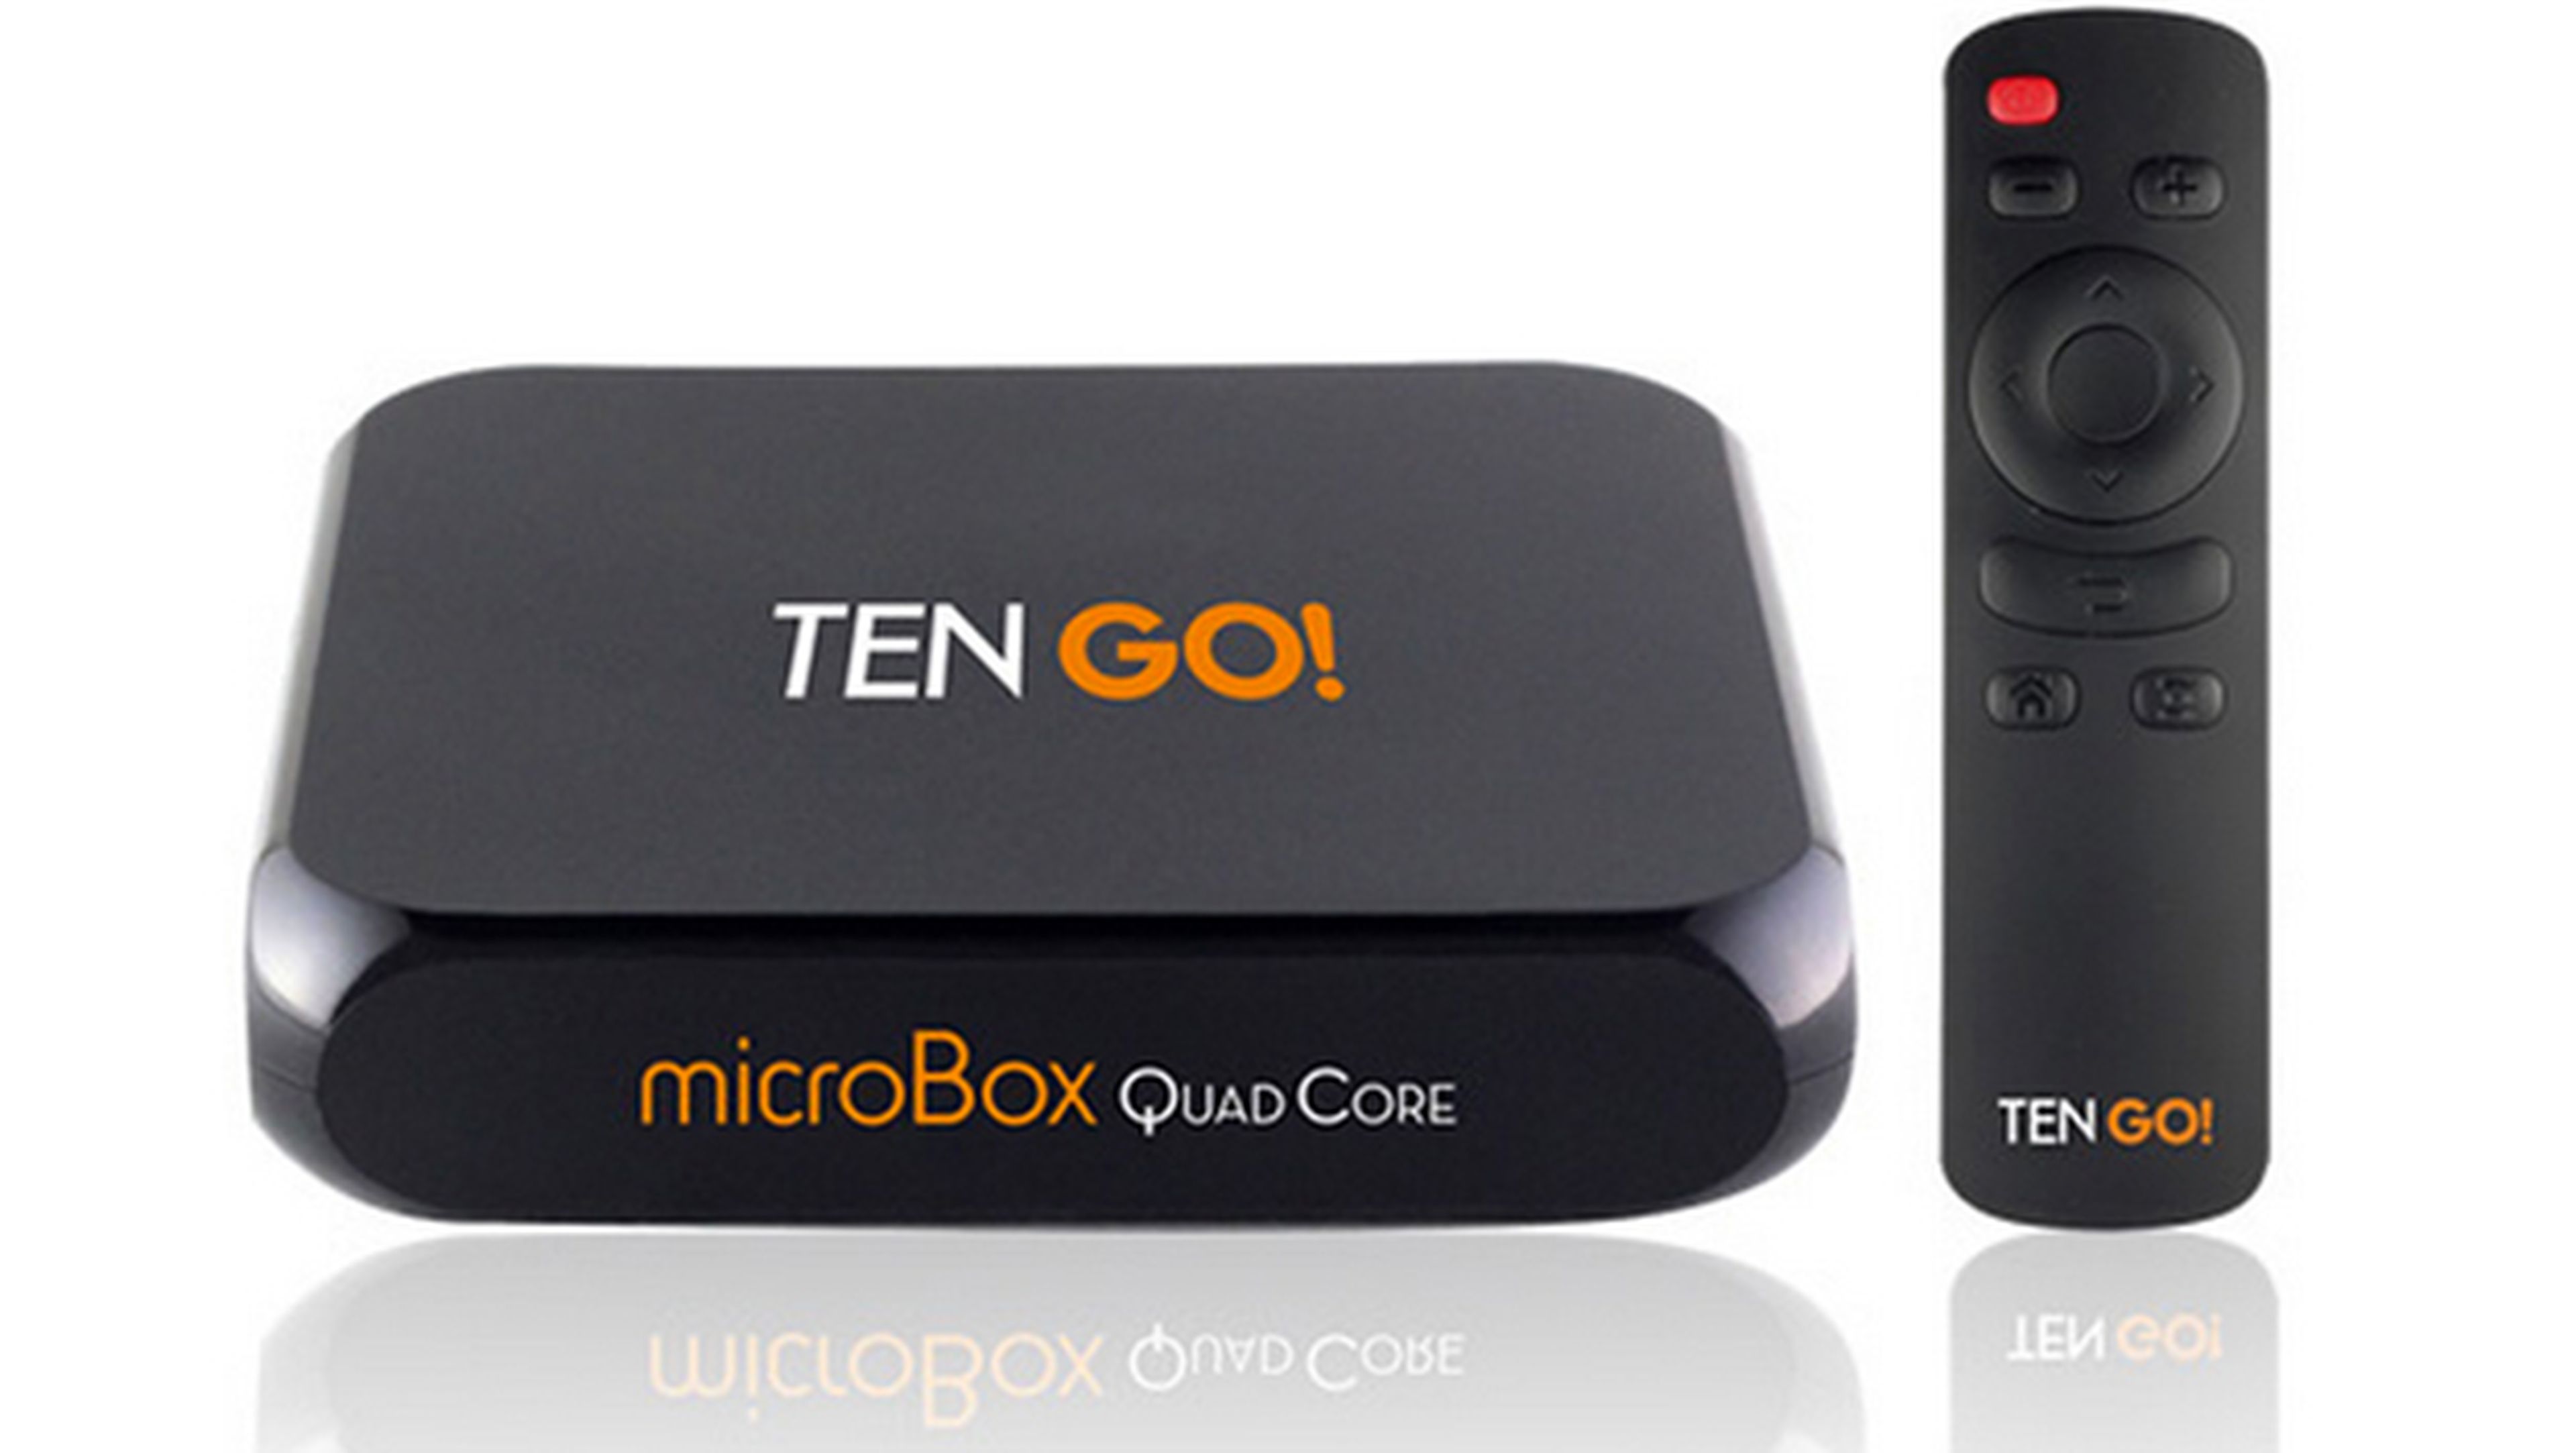 TenGo microBox quad core mejores regalos tecnológicos Día de la Madre